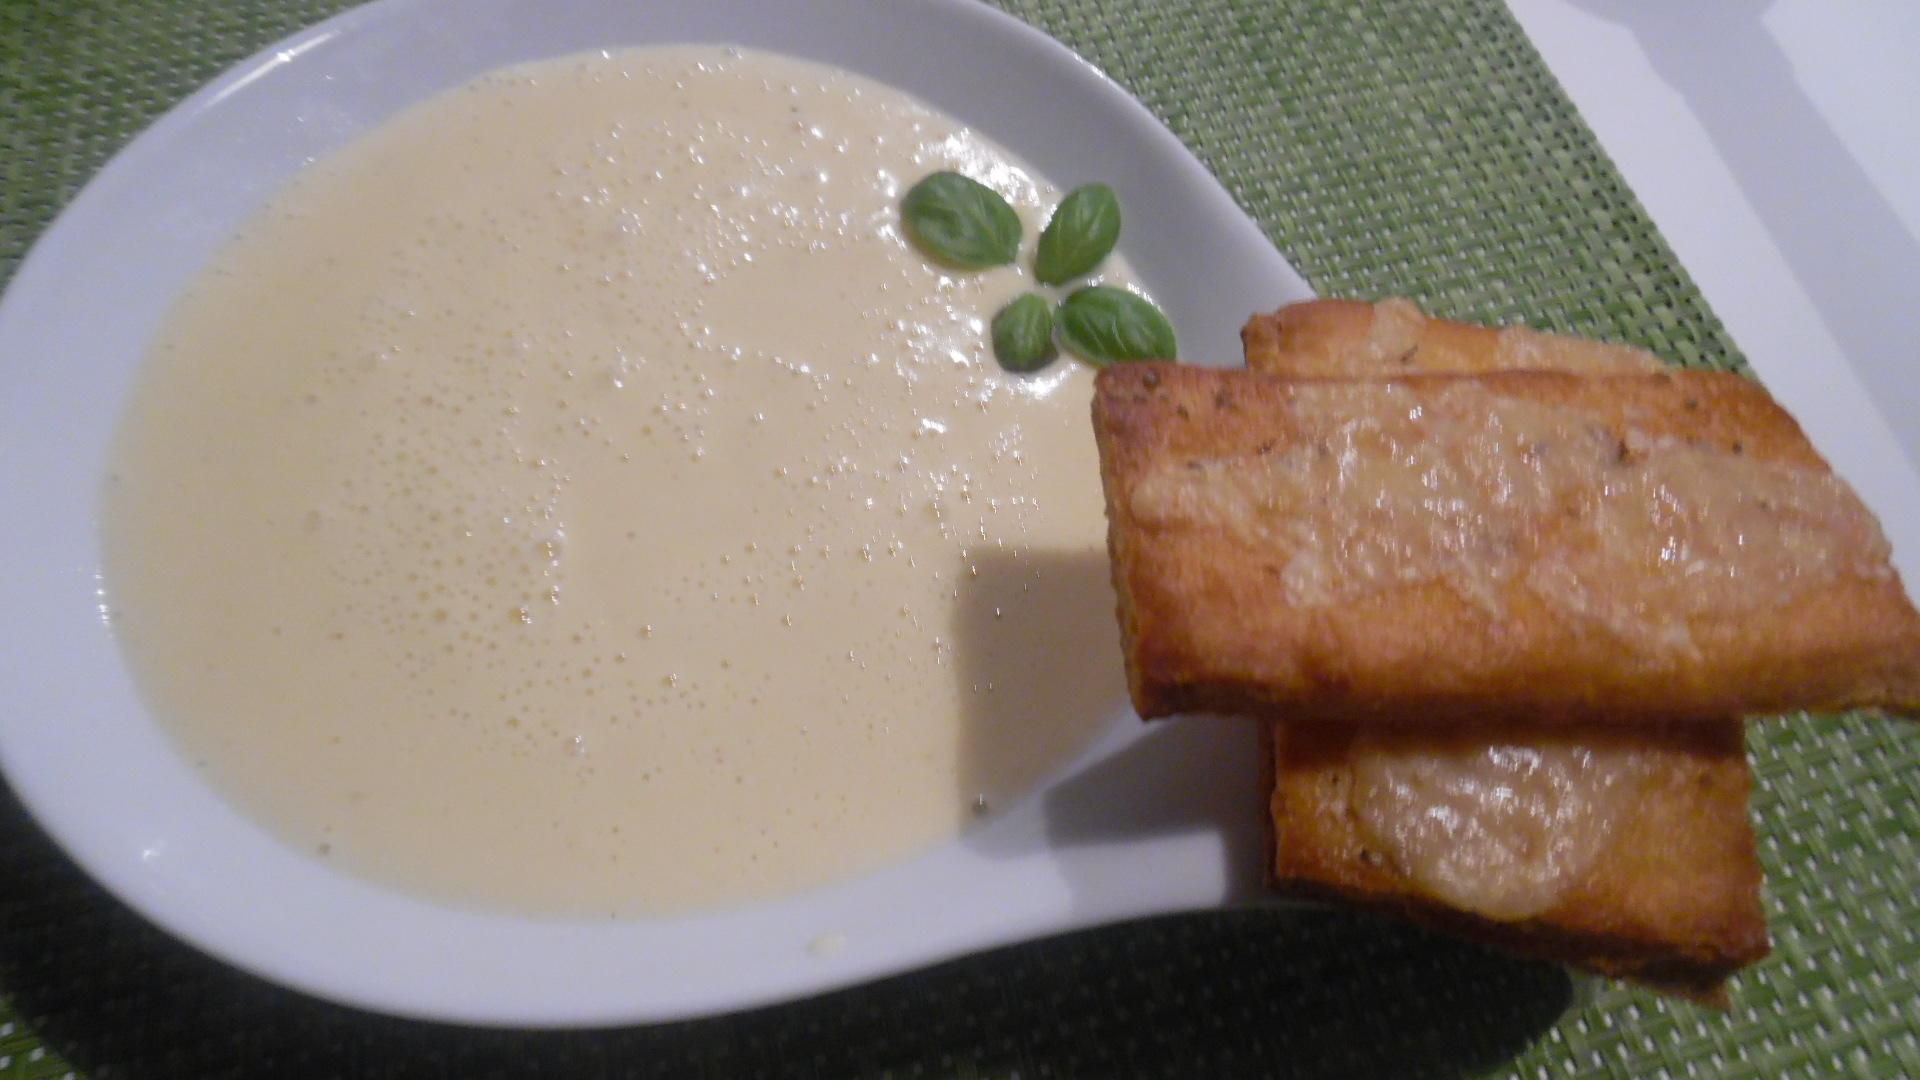 Bilder für Knoblauchsuppe mit Parmesan-Crostini - Rezept